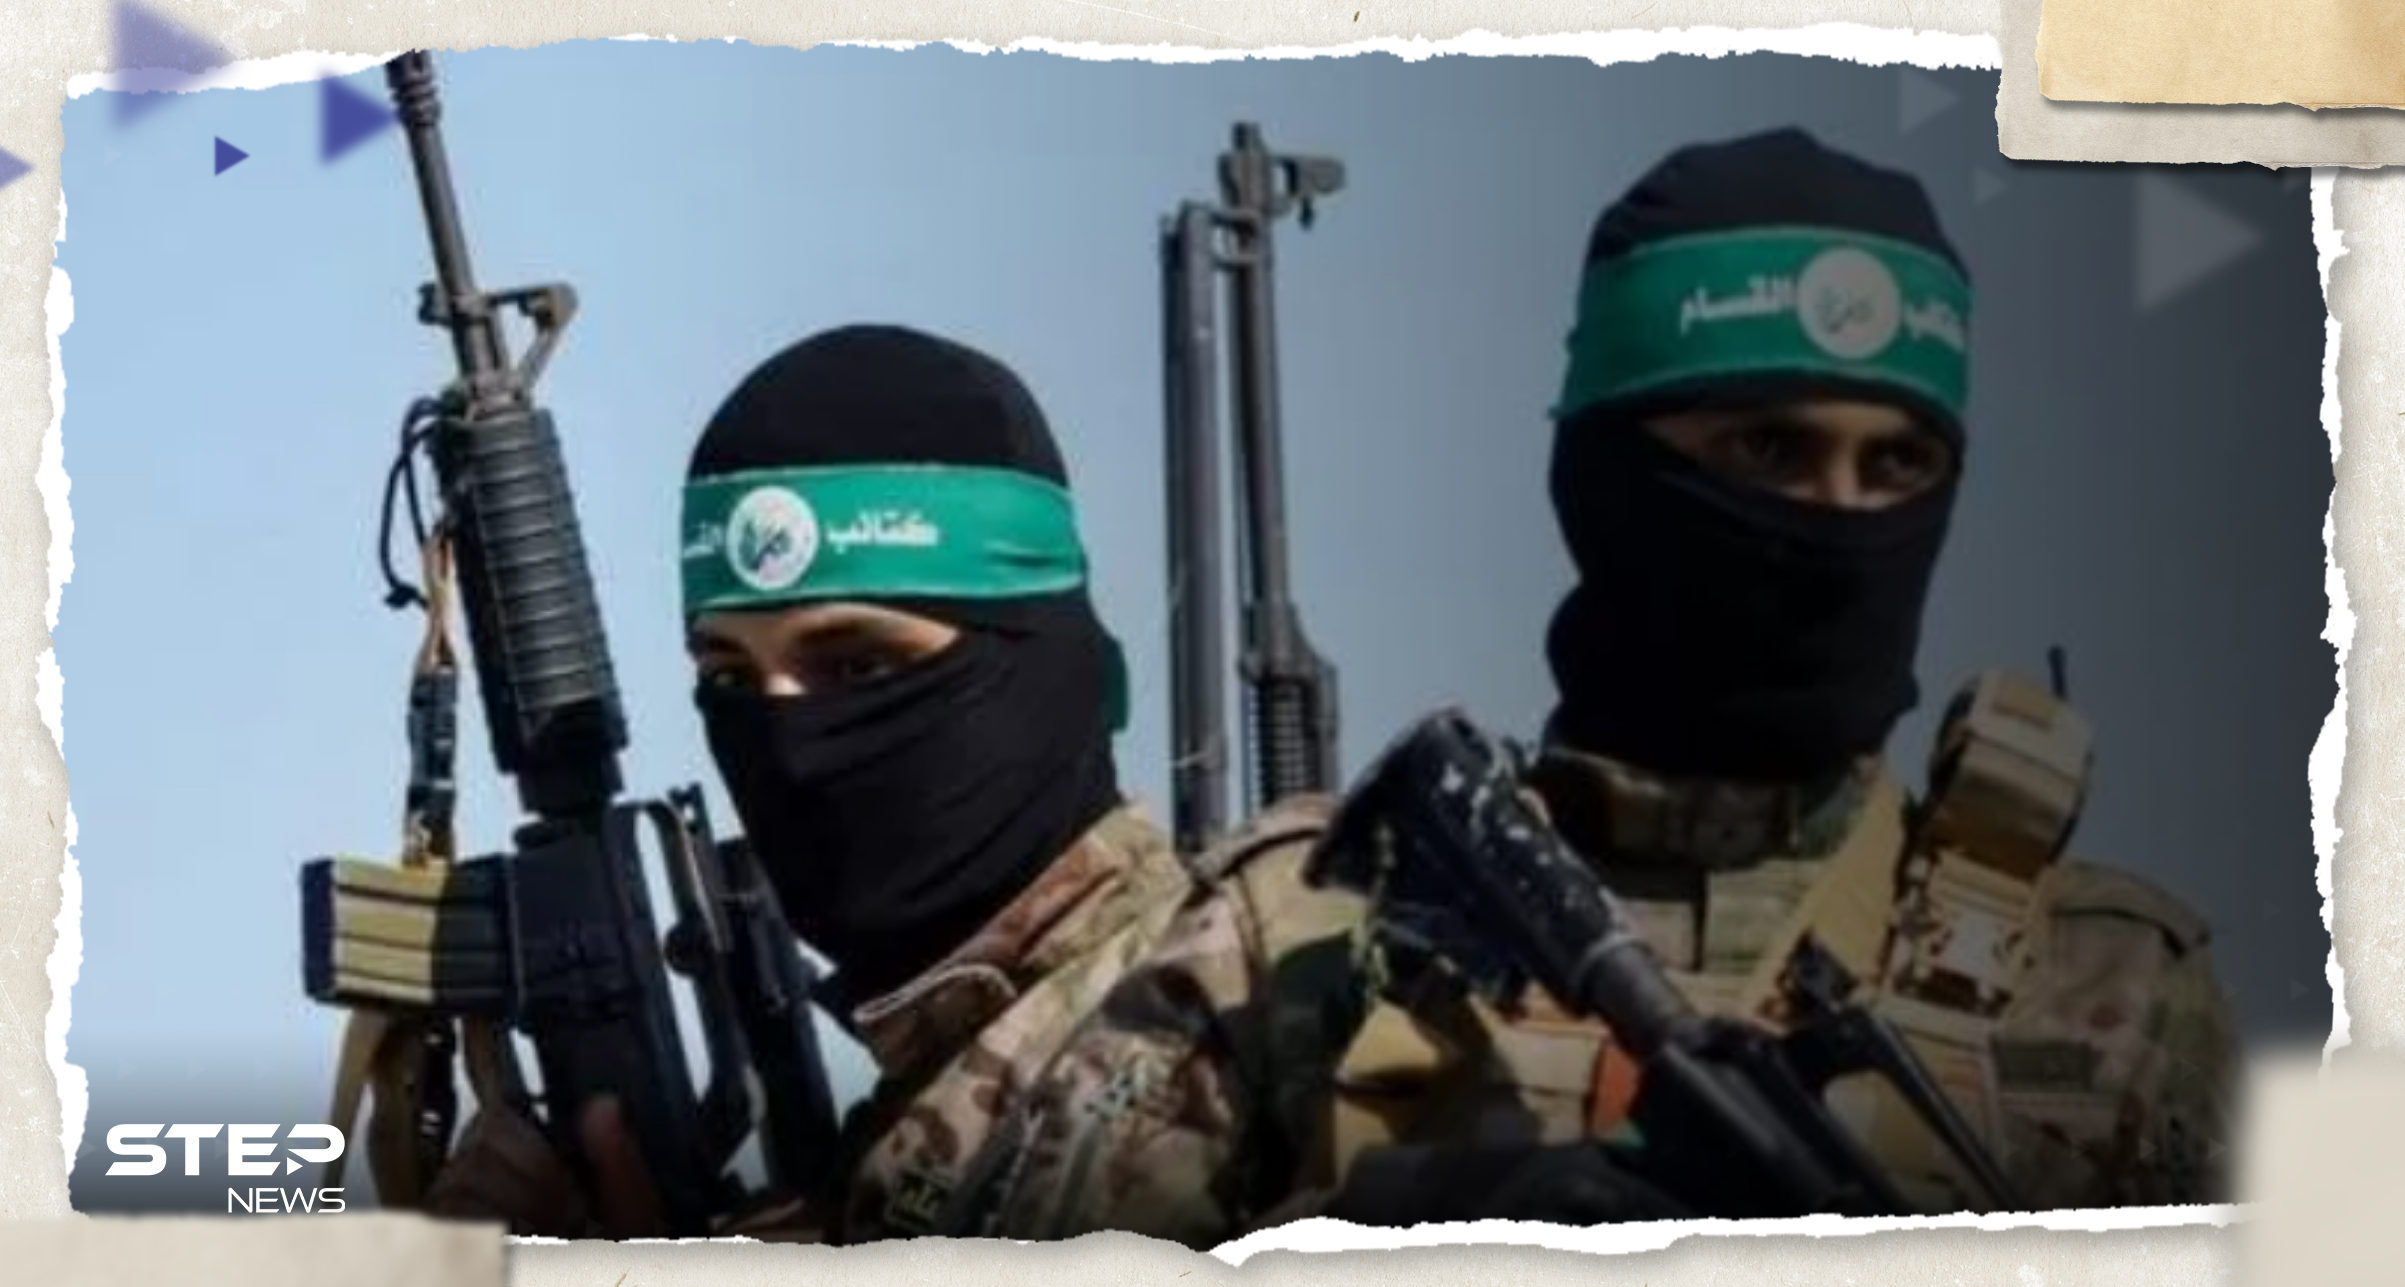 صحيفة تكشف عن معلومات "سرّية" بيد الجيش الإسرائيلي من كاميرات رؤوس مقاتلي حماس